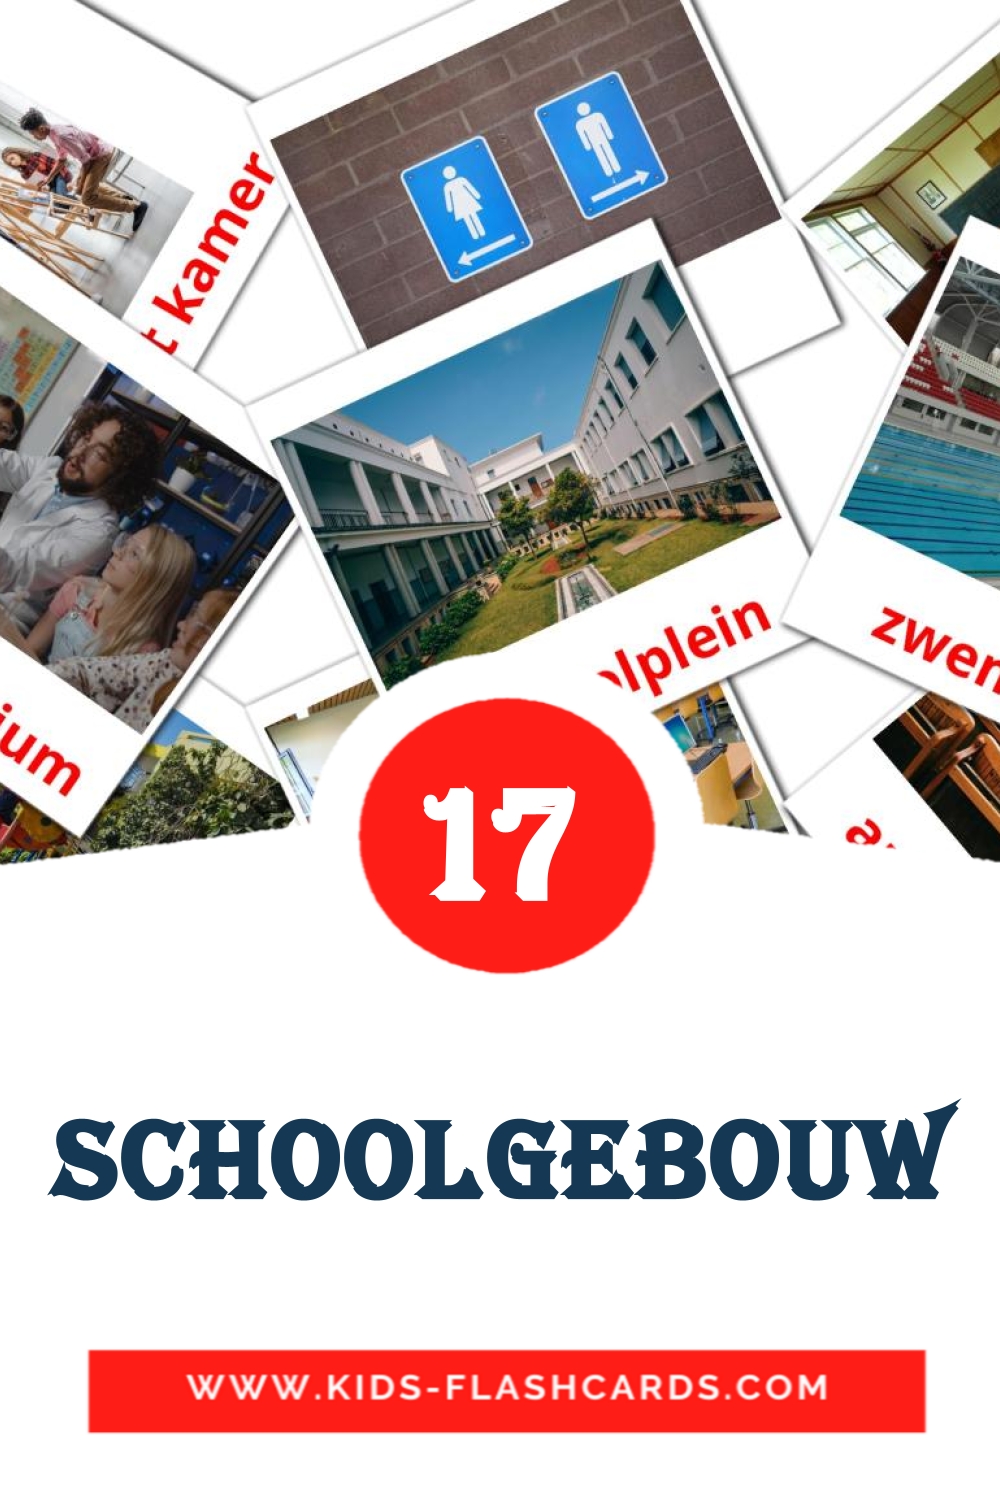 17 Schoolgebouw fotokaarten voor kleuters in het nederlands